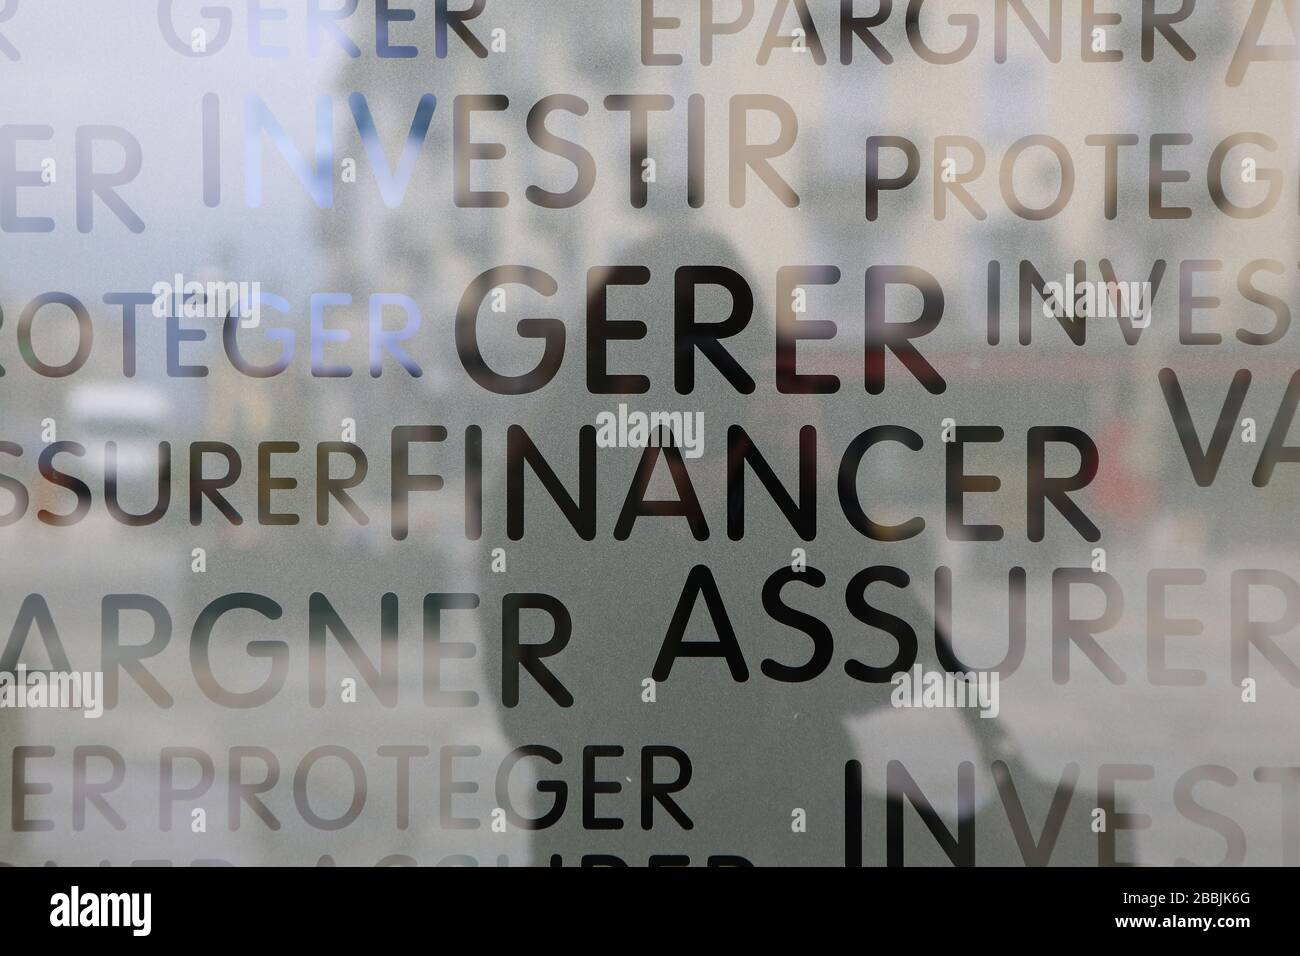 Amtsantritt Gérer. Finanzier. Epargner. Assurer. Affiche. Savoie. Frankreich. Stockfoto